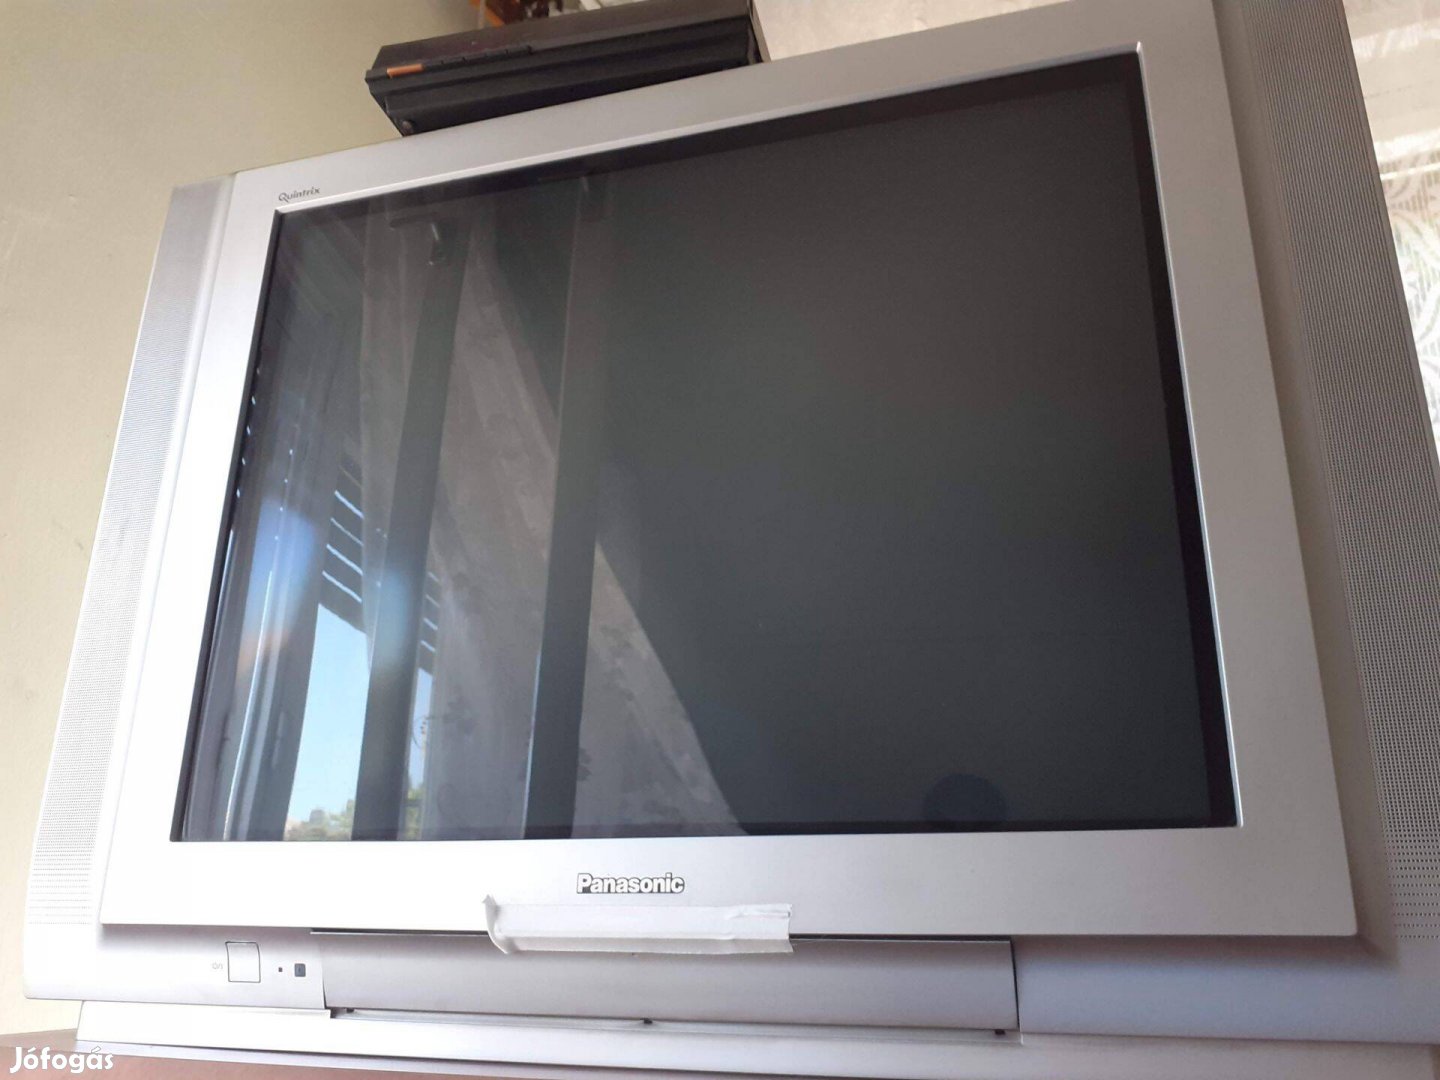 Eladó retro Panasonic hagyományos TV 70cm átmérő